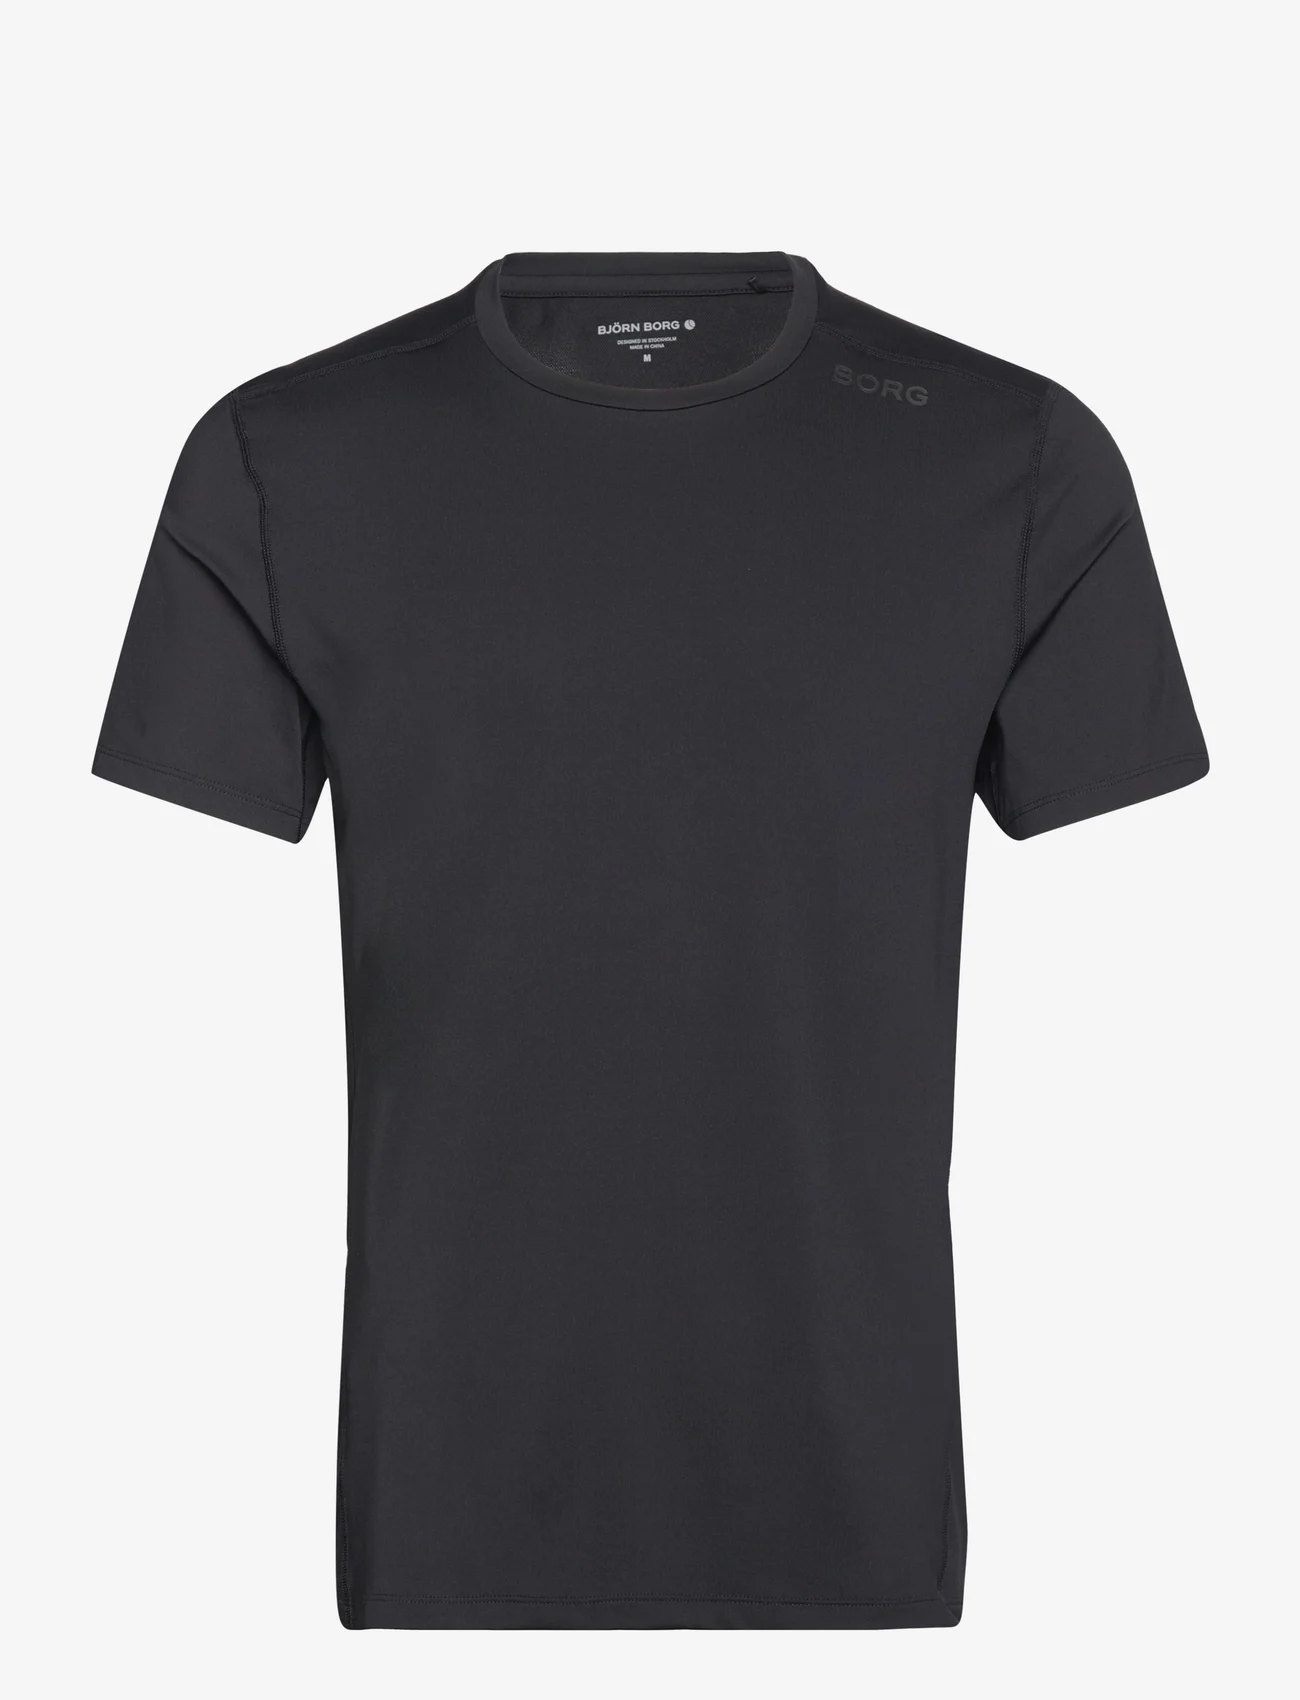 Björn Borg - BORG TECH T-SHIRT - t-shirts - black beauty - 0